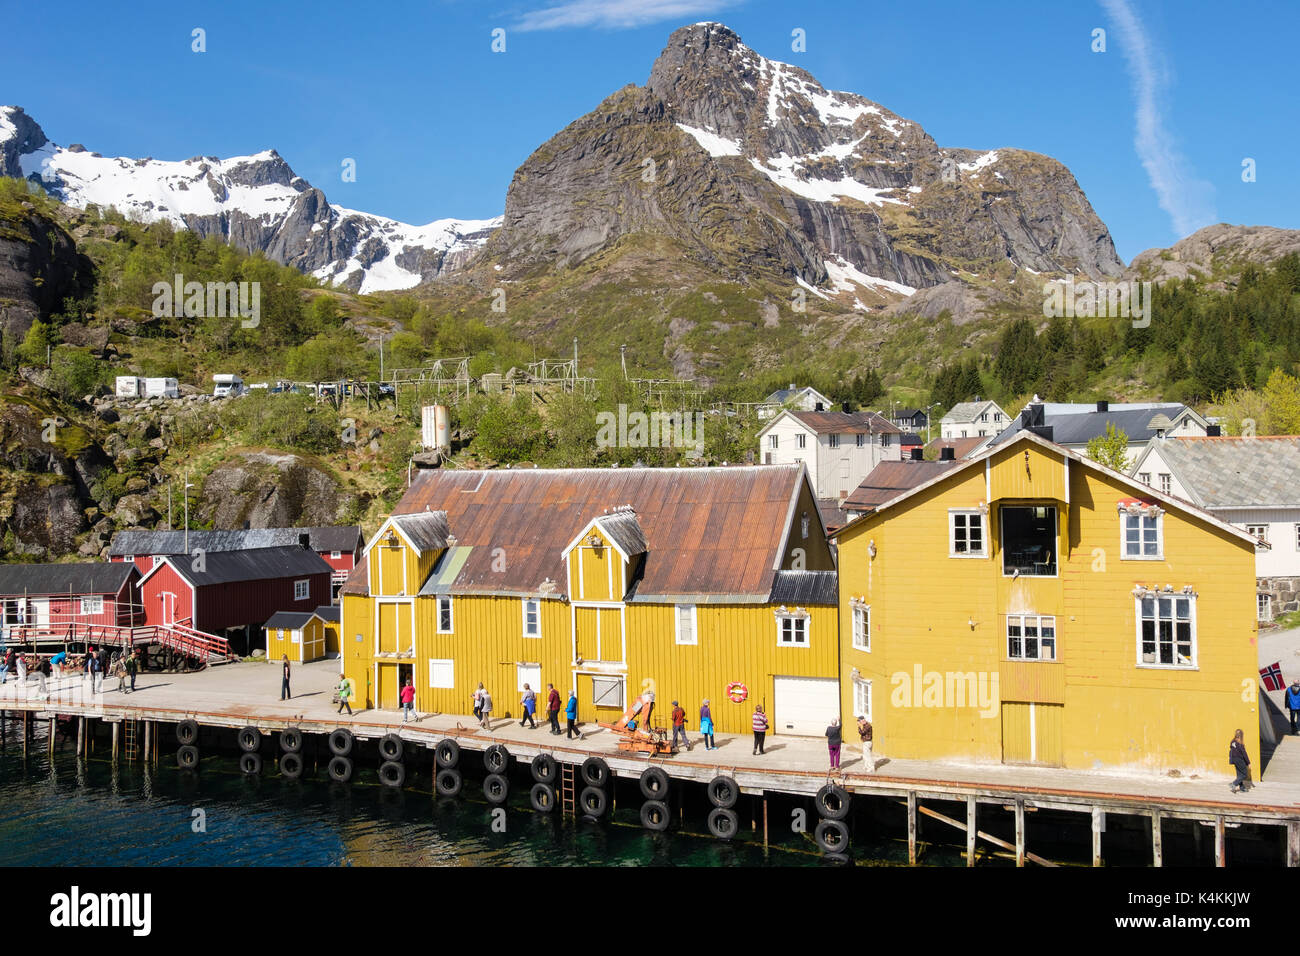 Les touristes visitant village de pêcheurs historique de Nusfjord, Flakstadøya Island, îles Lofoten, Nordland, Norvège, Scandinavie Banque D'Images